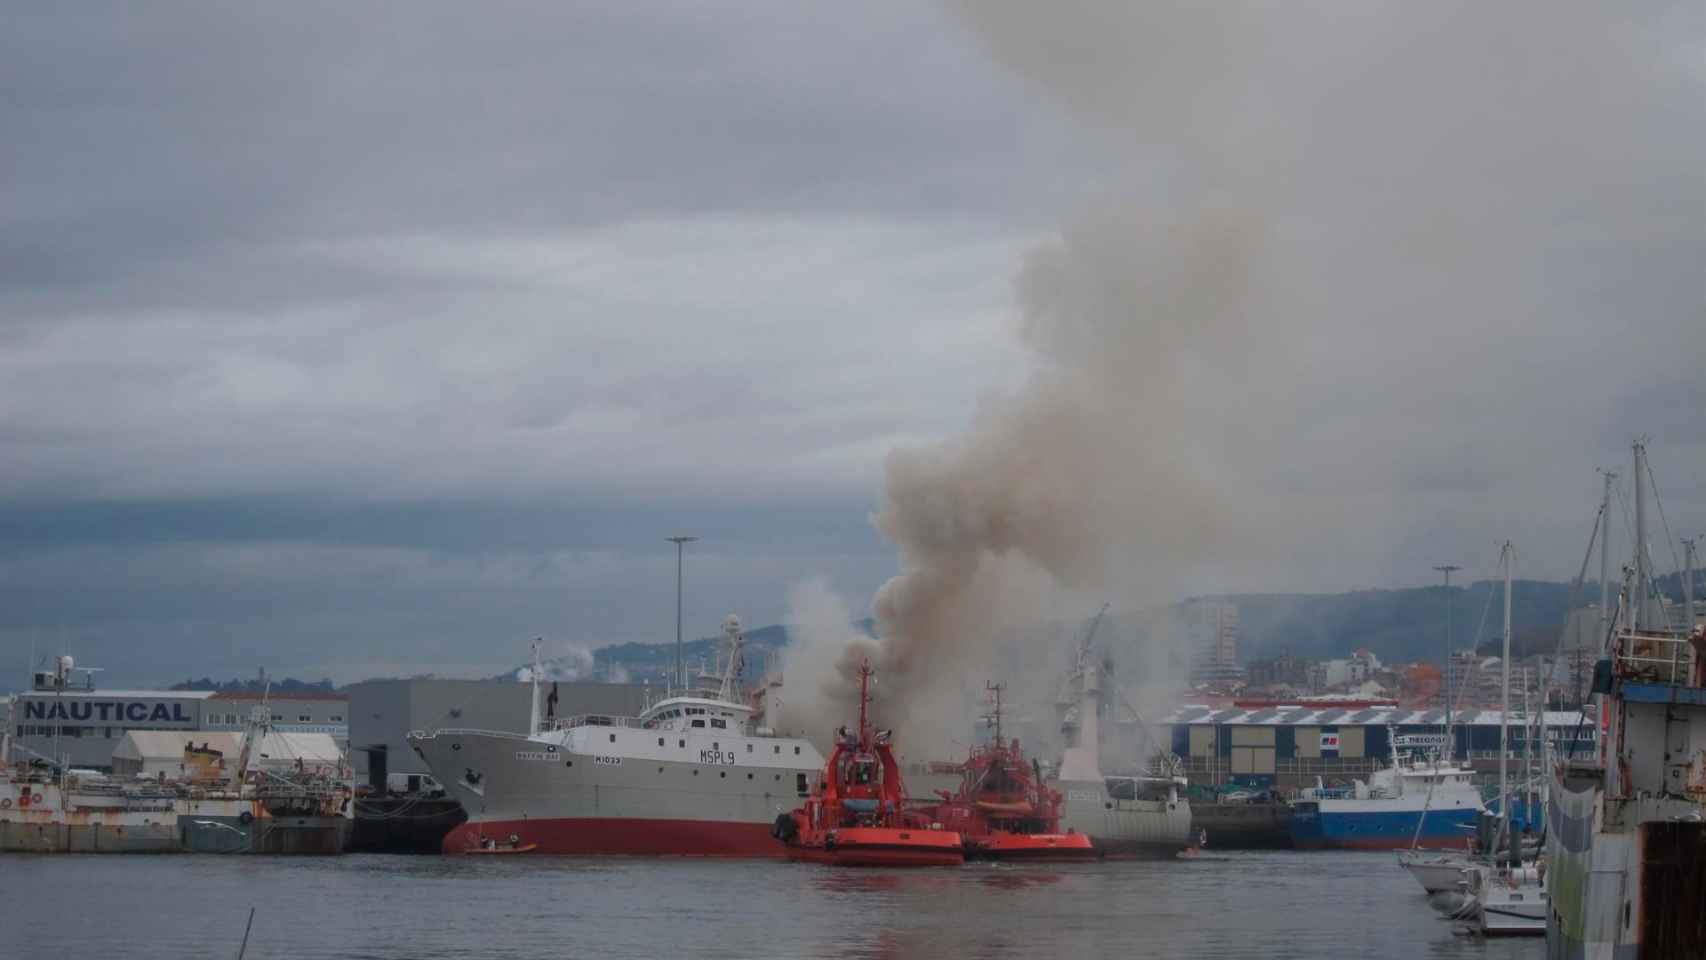 El buque congelador Baffin Bay arde en el Puerto de Bouzas, en Vigo.